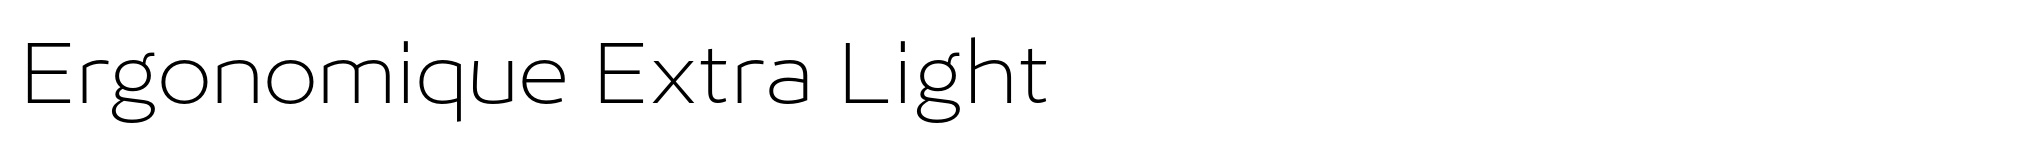 Ergonomique Extra Light image